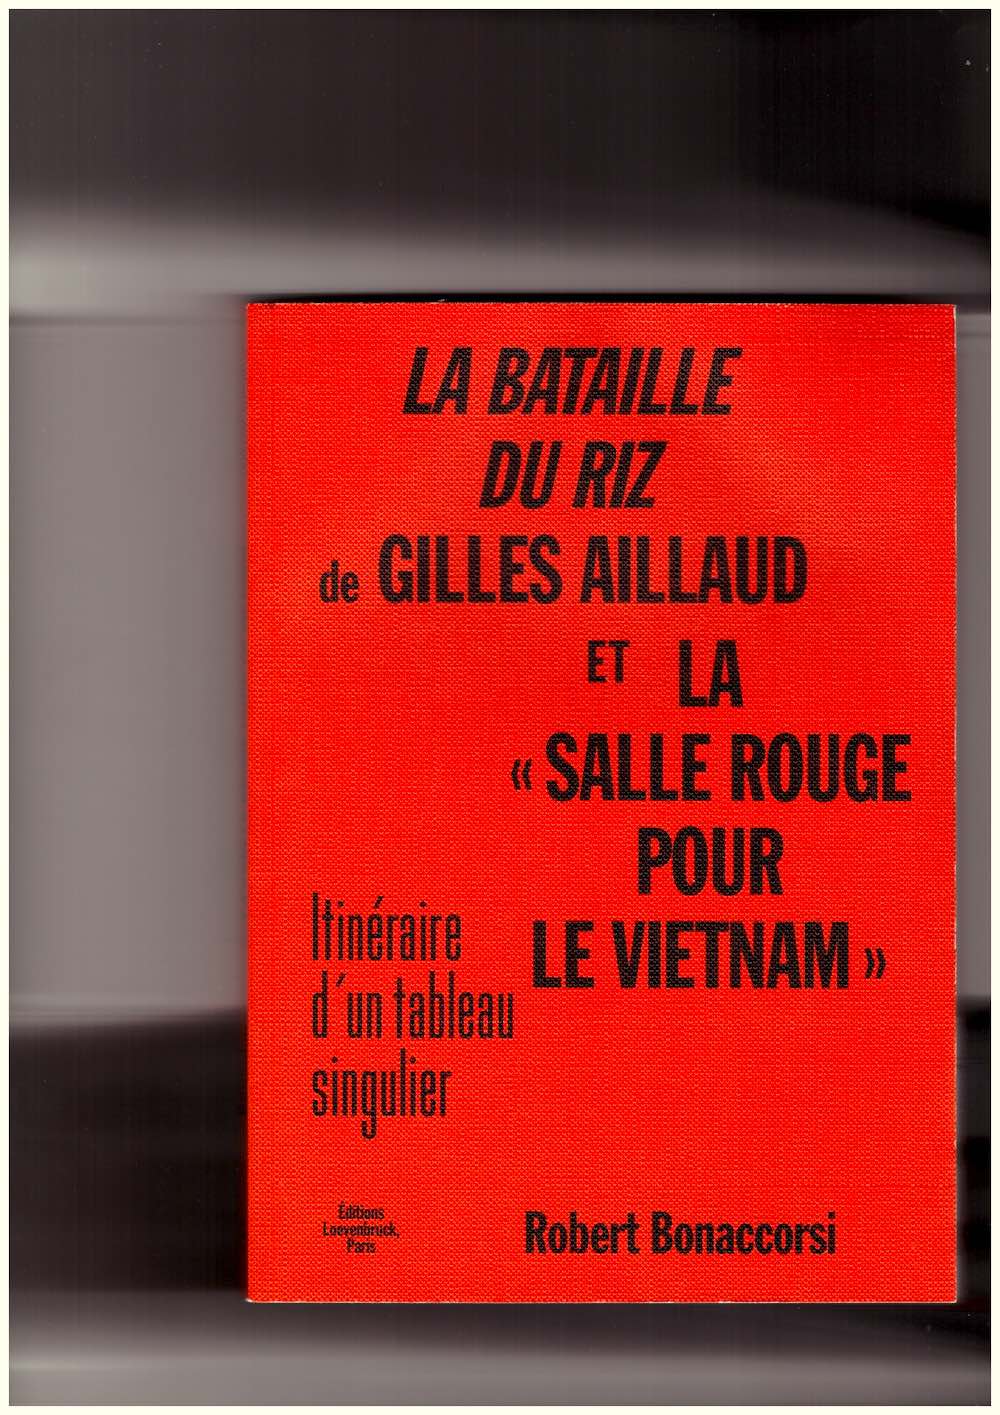 AILLAUD, Gilles; BONACCORSI, Robert - La Bataille du riz de Gilles Aillaud et la « Salle rouge pour Le Vietnam » – Itinéraire d'un tableau singulier